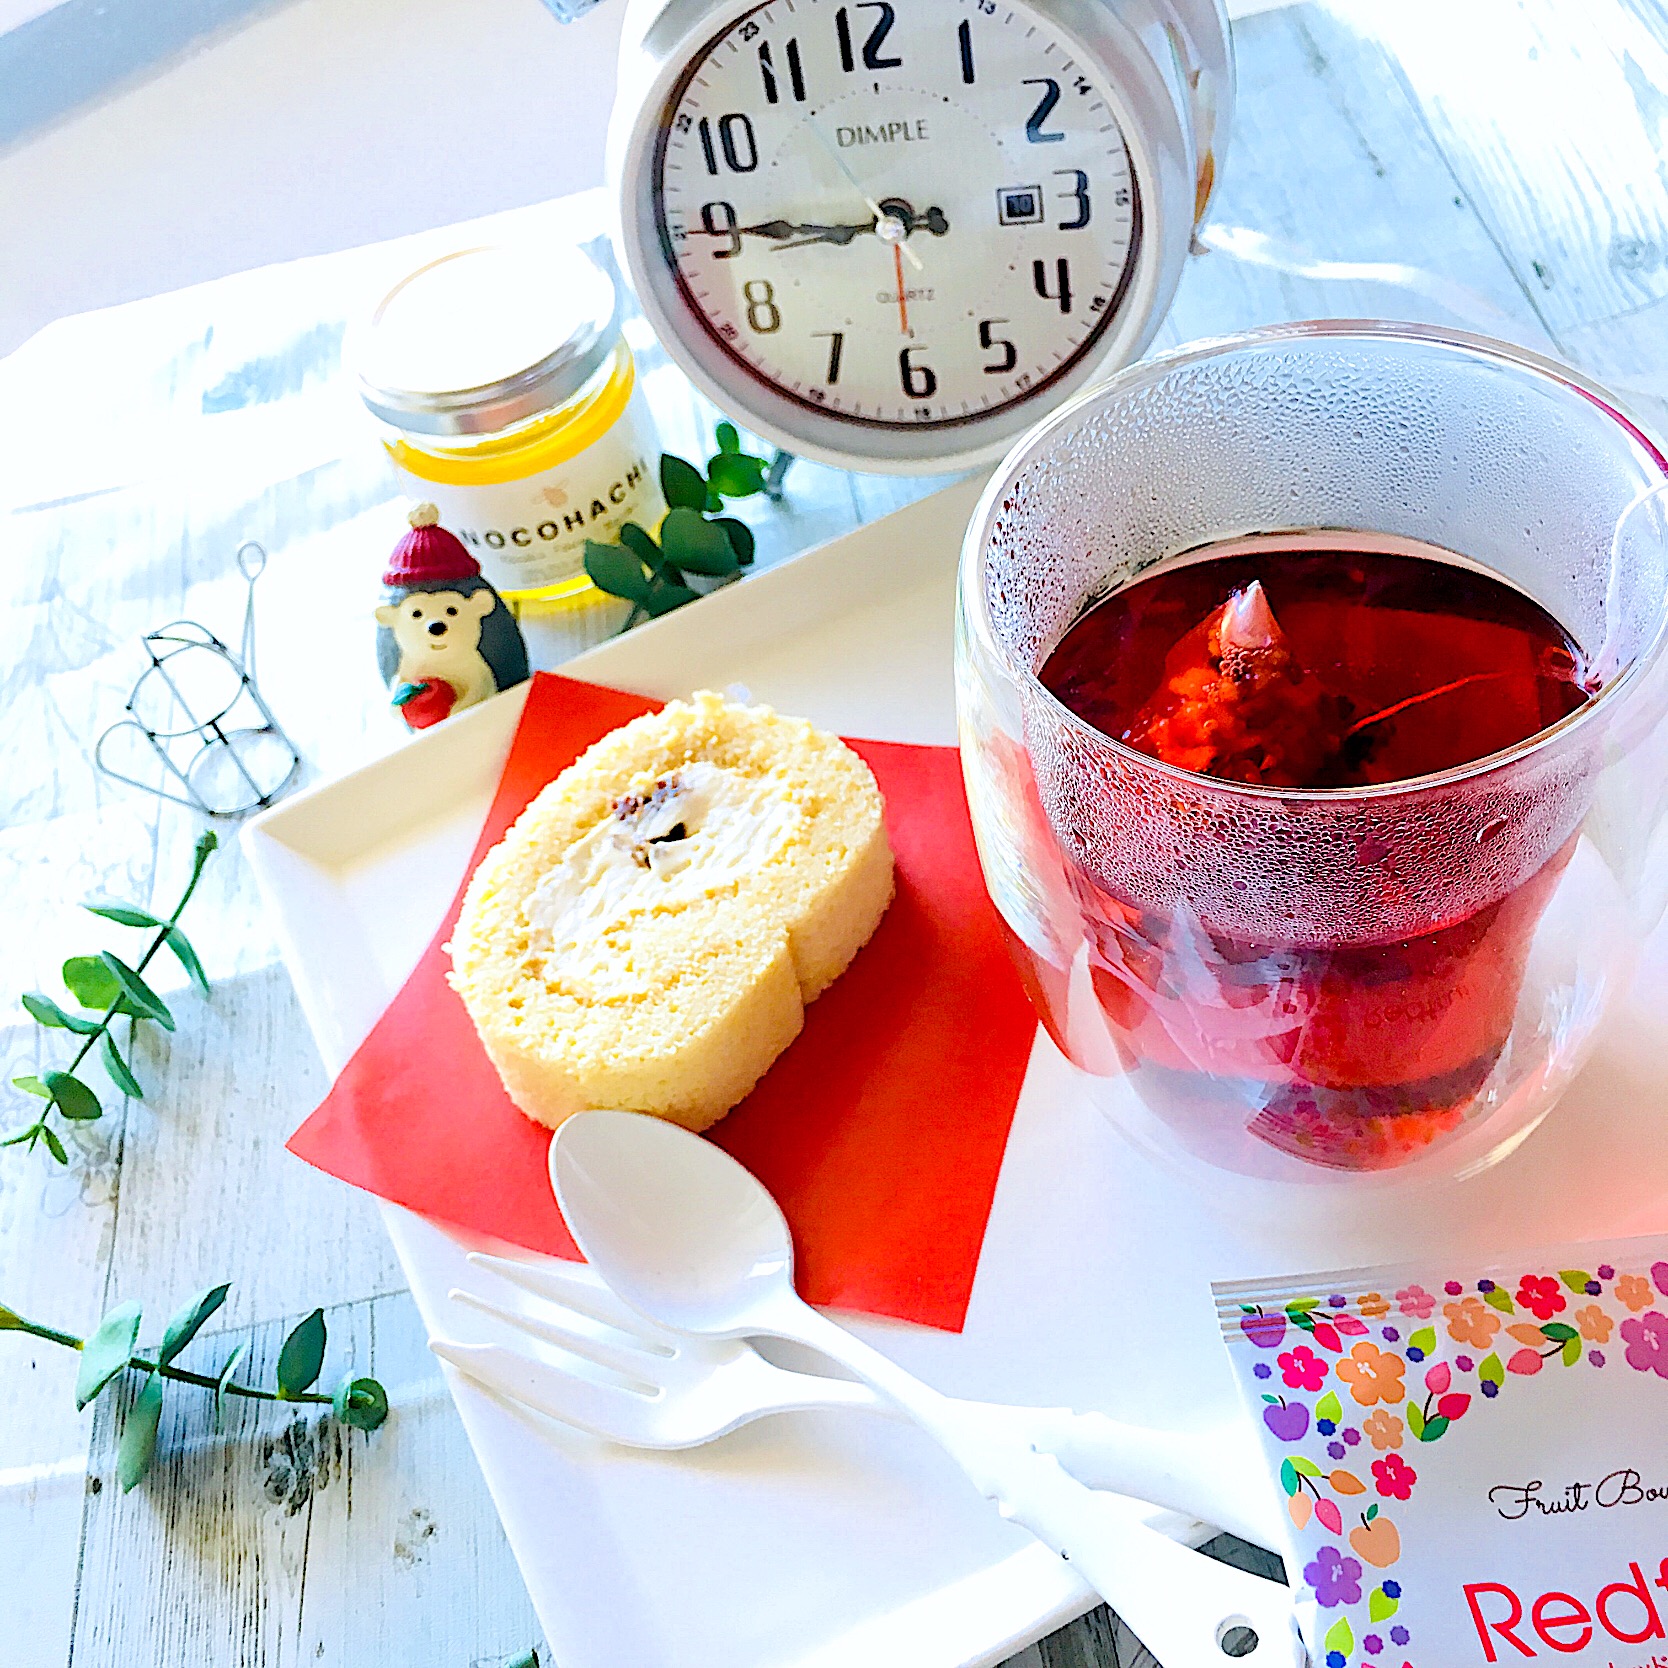 日東紅茶 Redfruit レッドフルーツティーとメープルロールケーキ 週末の朝♫